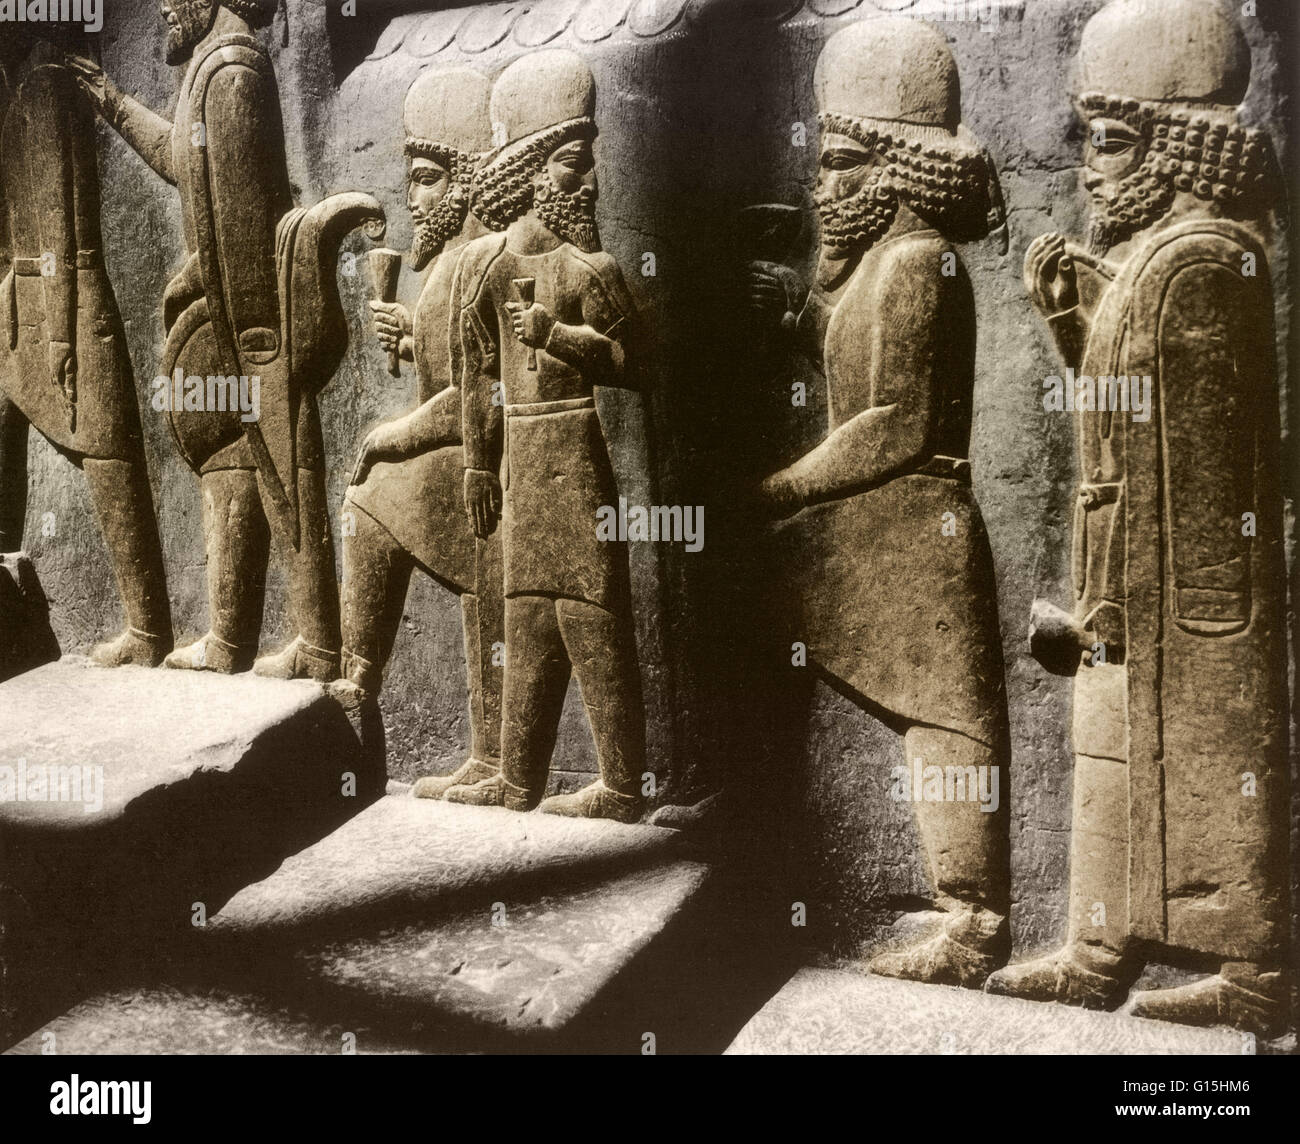 Tribut-Träger in einem Relief entlang der nördlichen Treppe der Ratssaal (Tripylon), in der alten persischen Hauptstadt Persepolis, Iran, ca. 500 v. Chr.. Stockfoto